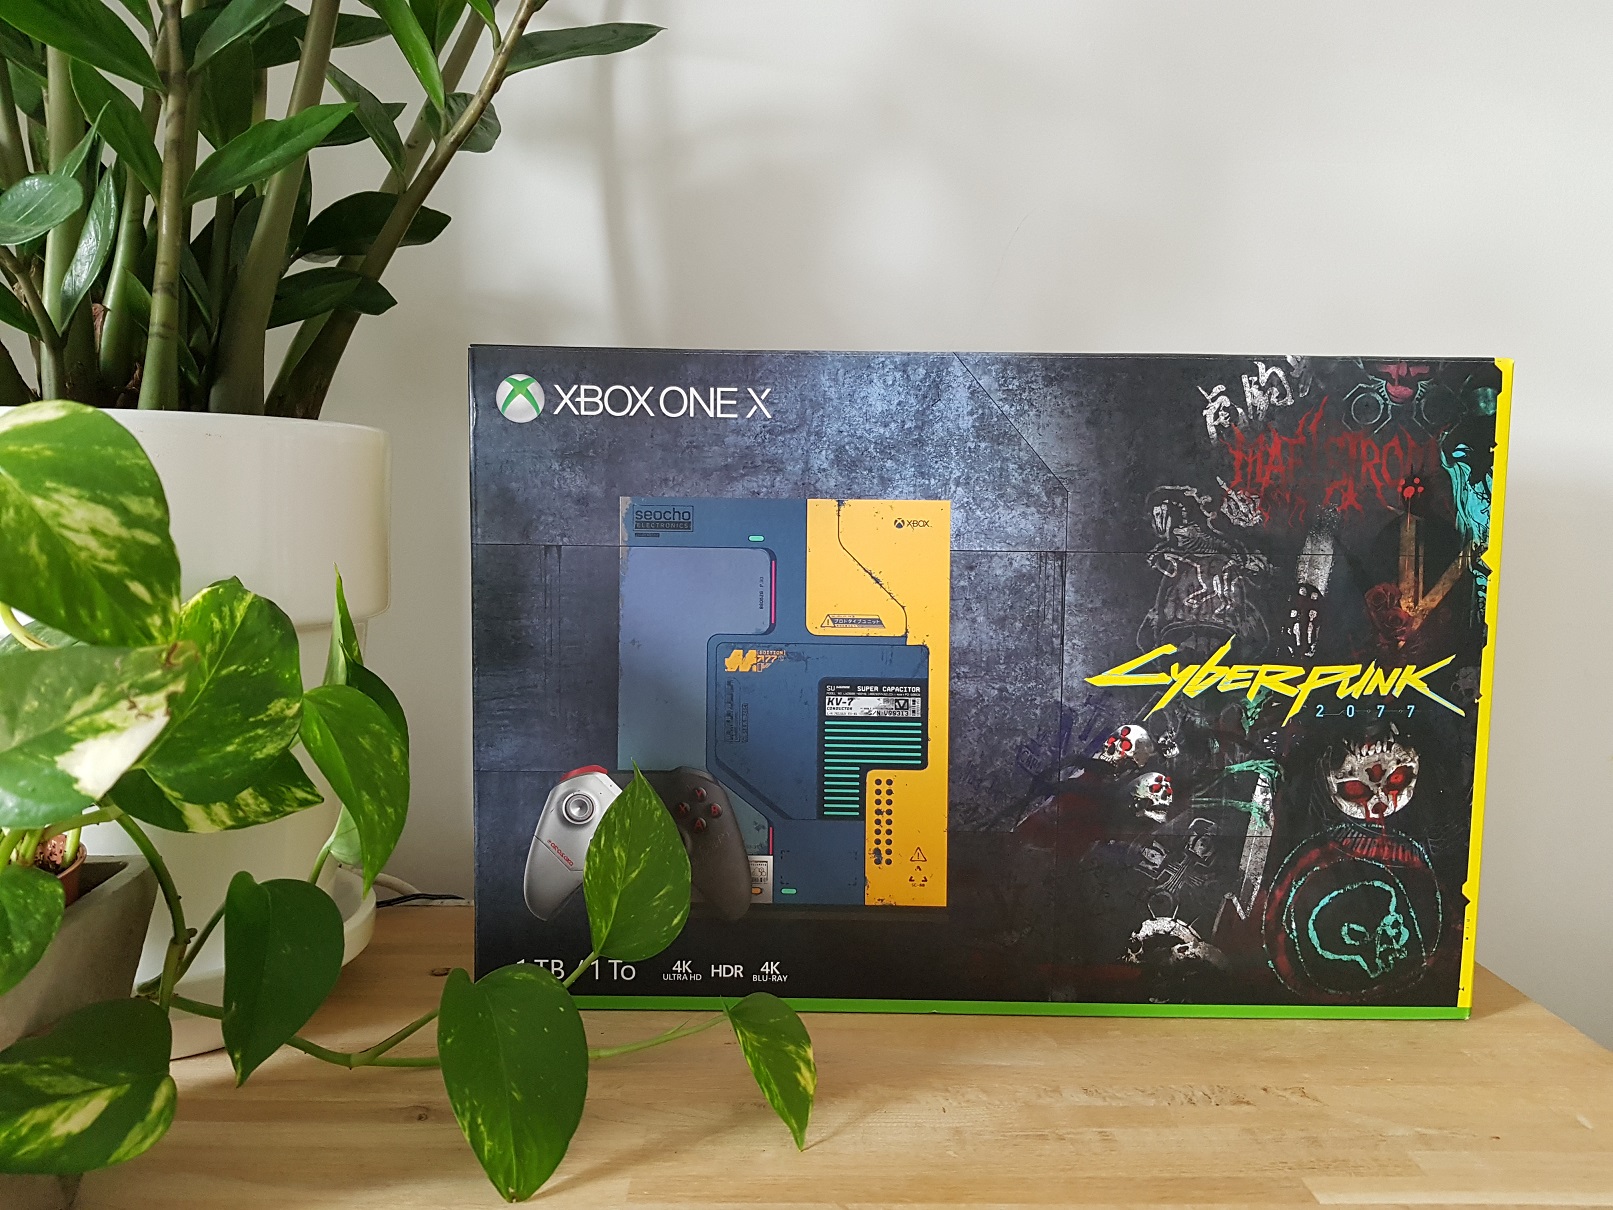 Unboxing : la Xbox One X Cyberpunk 2077 est disponible (photos maison)